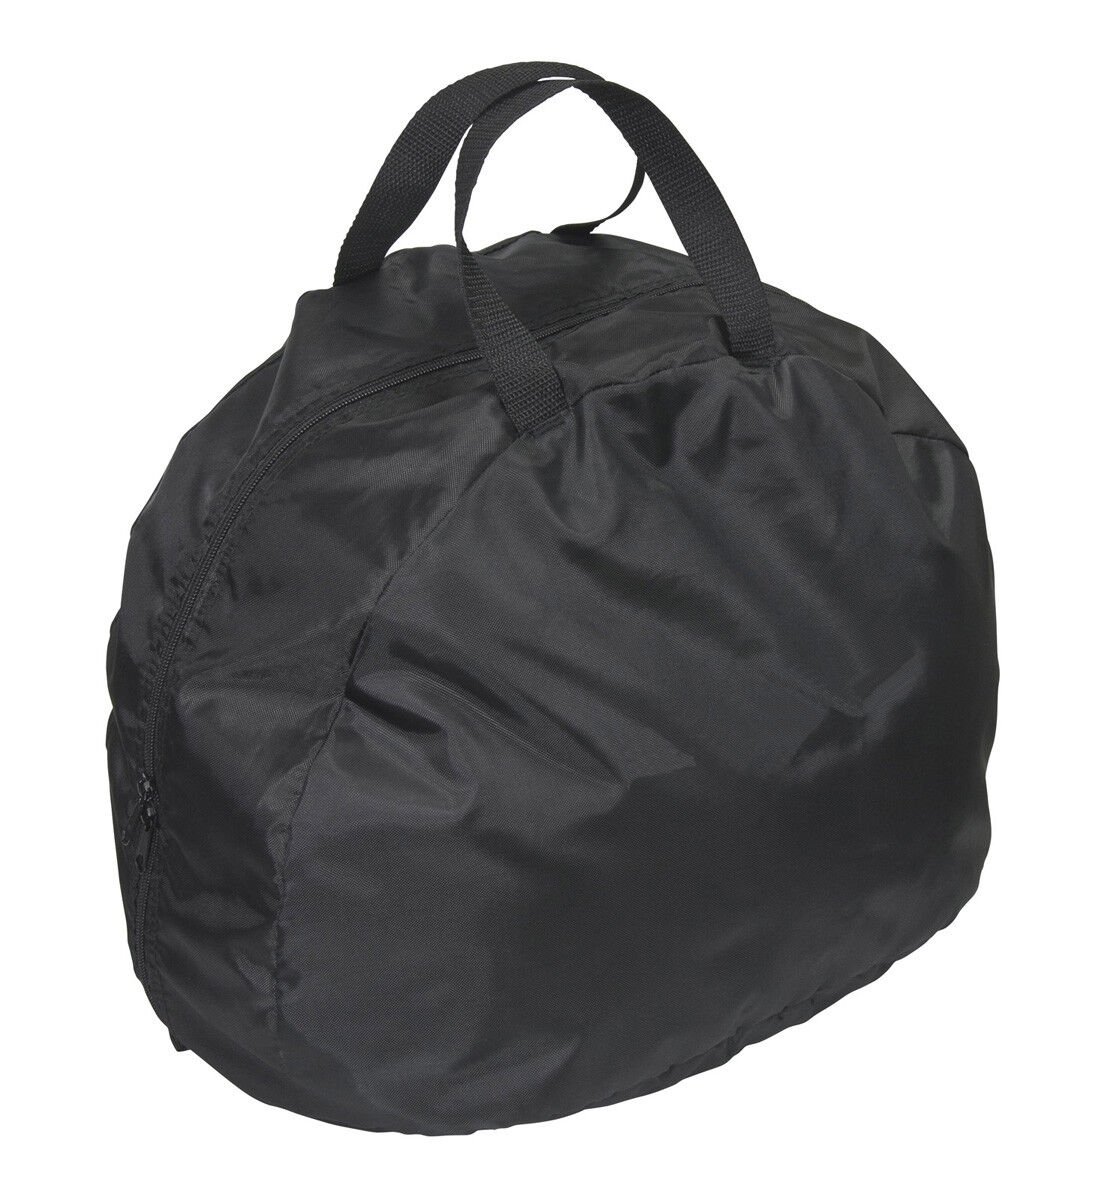 Lunatic Premium Helmet Bag - Soft Pile Lining - Black